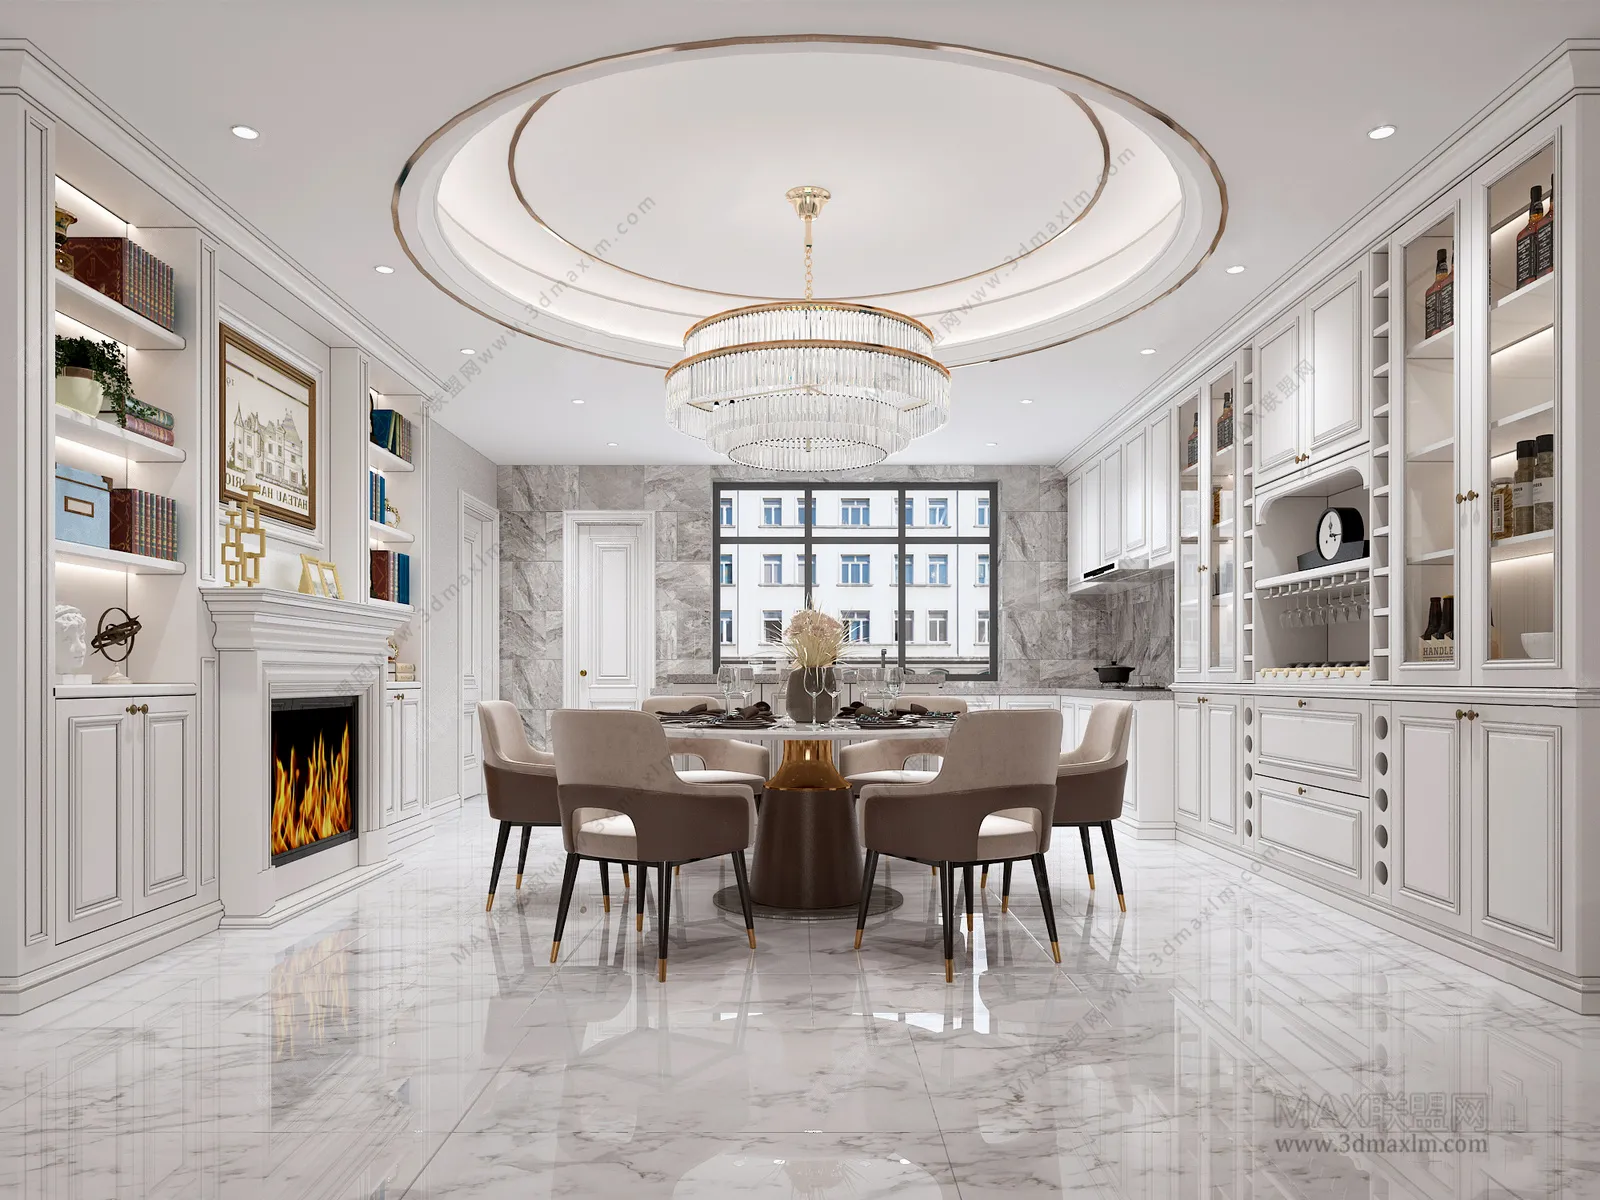 Dining room – Interior Design – European Design – 005